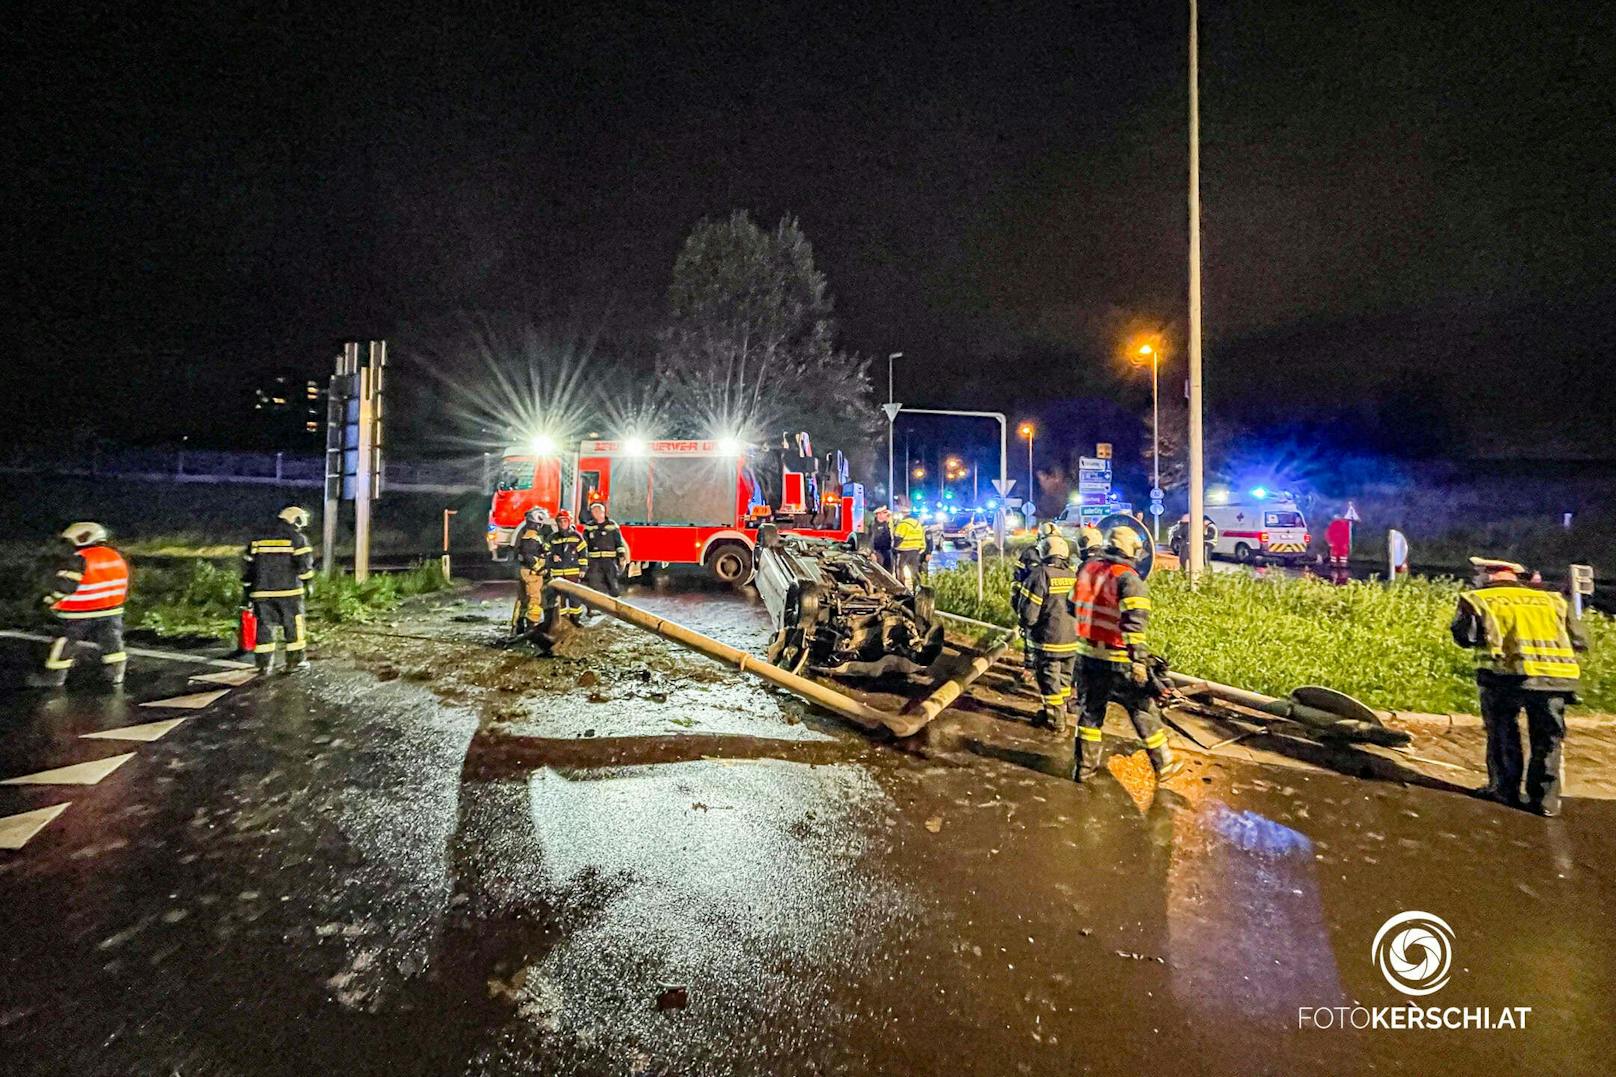 Ein schwerer Verkehrsunfall ereignete sich am Freitagabend im Kreisverkehr Mona-Lisa Tunnel in Linz-Ebelsberg. Ein Auto hat mit vermutlich überhöhter Geschwindigkeit einen Verkehrsleitmasten gerammt und kam in Folge am Dach zum Stillstand.